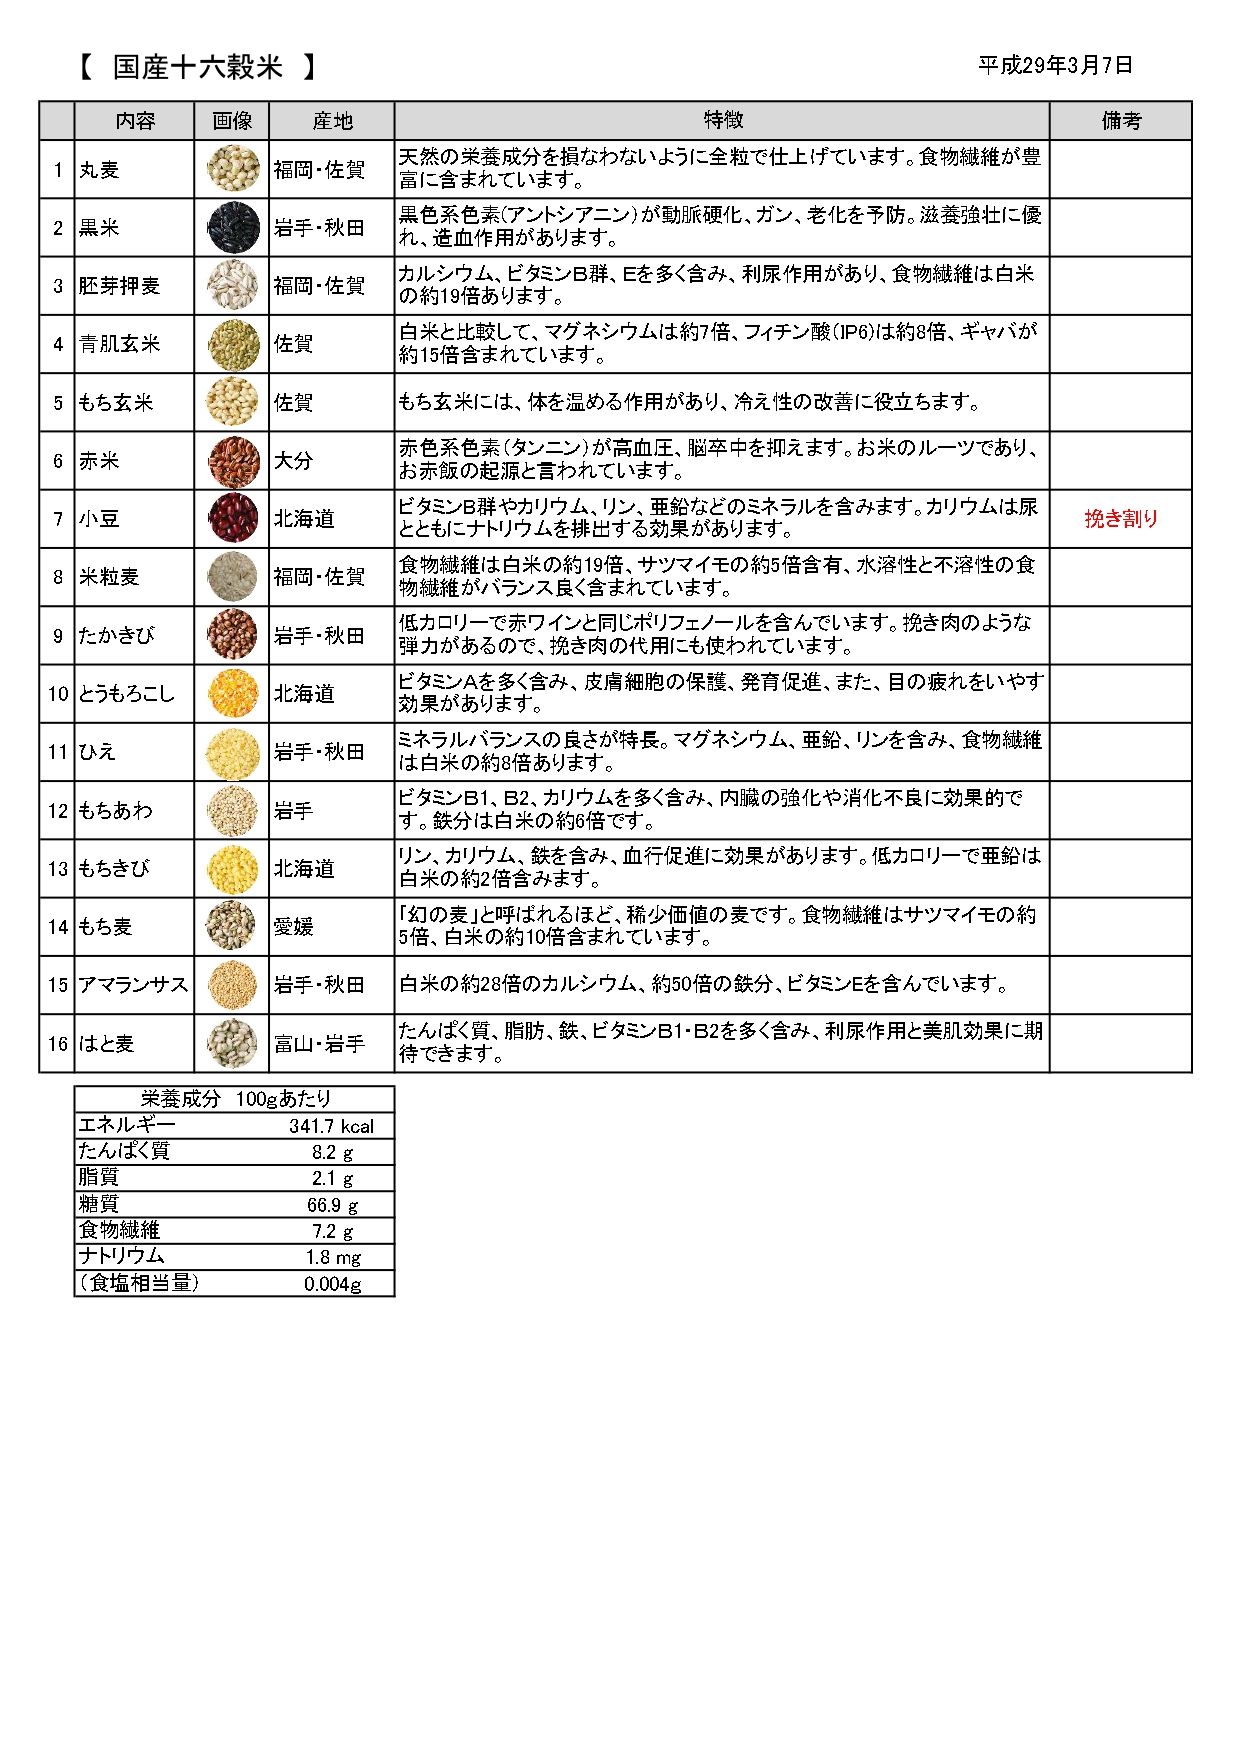 原料特徴オリジナル国産十六穀米 page 0001